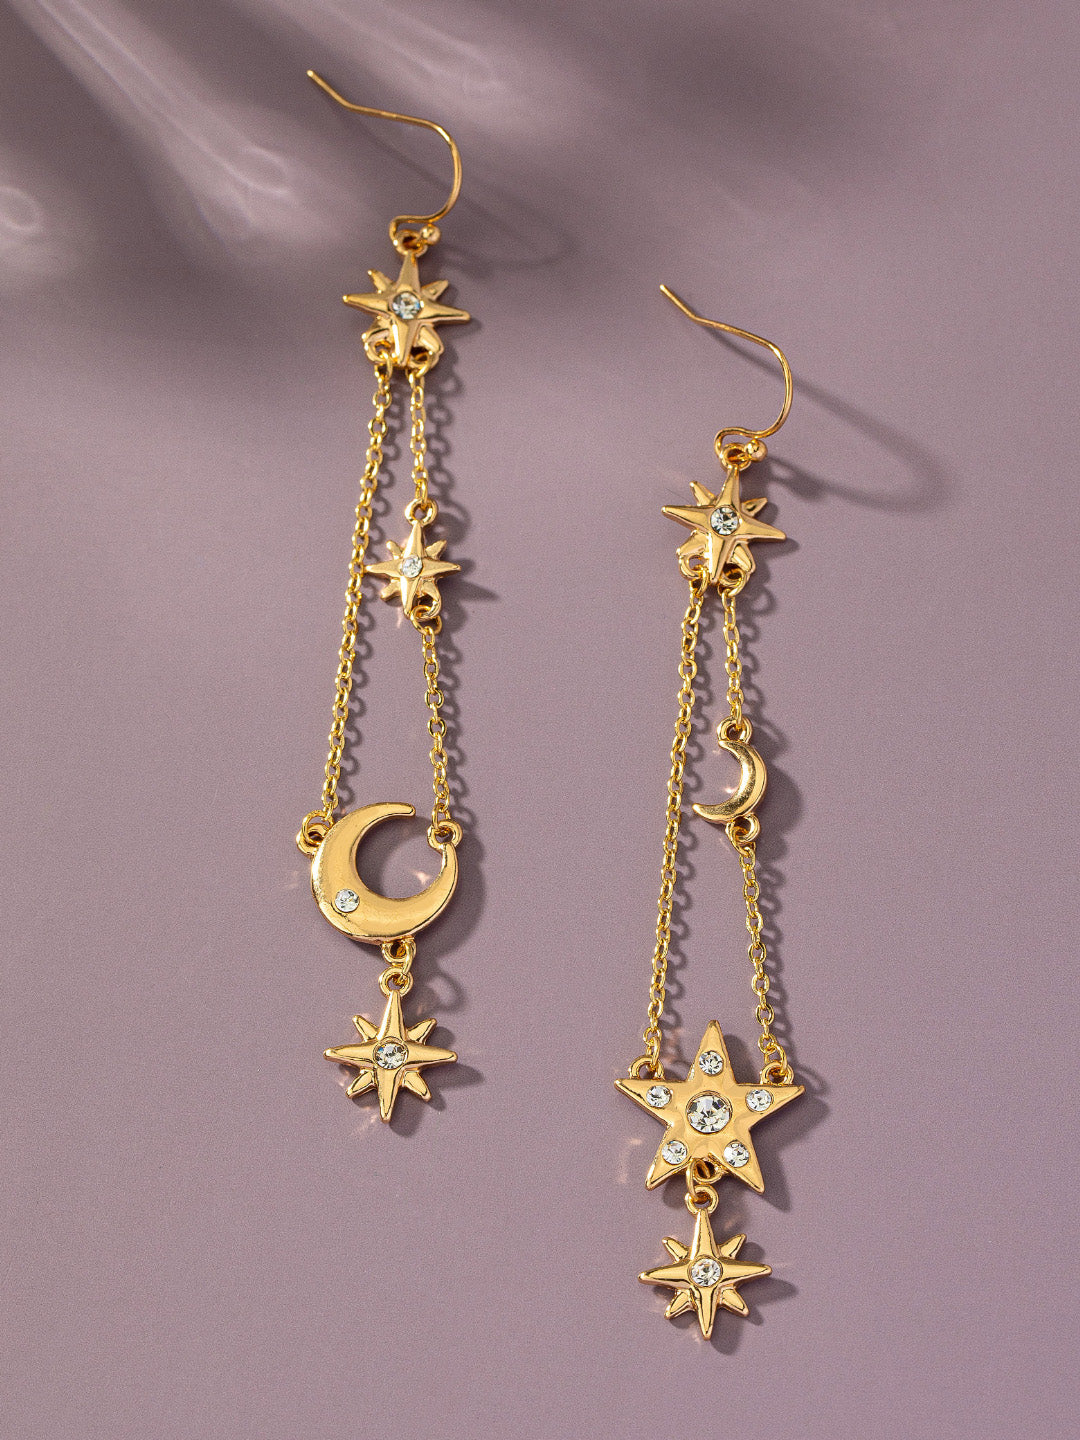 celestial chandelier earrings